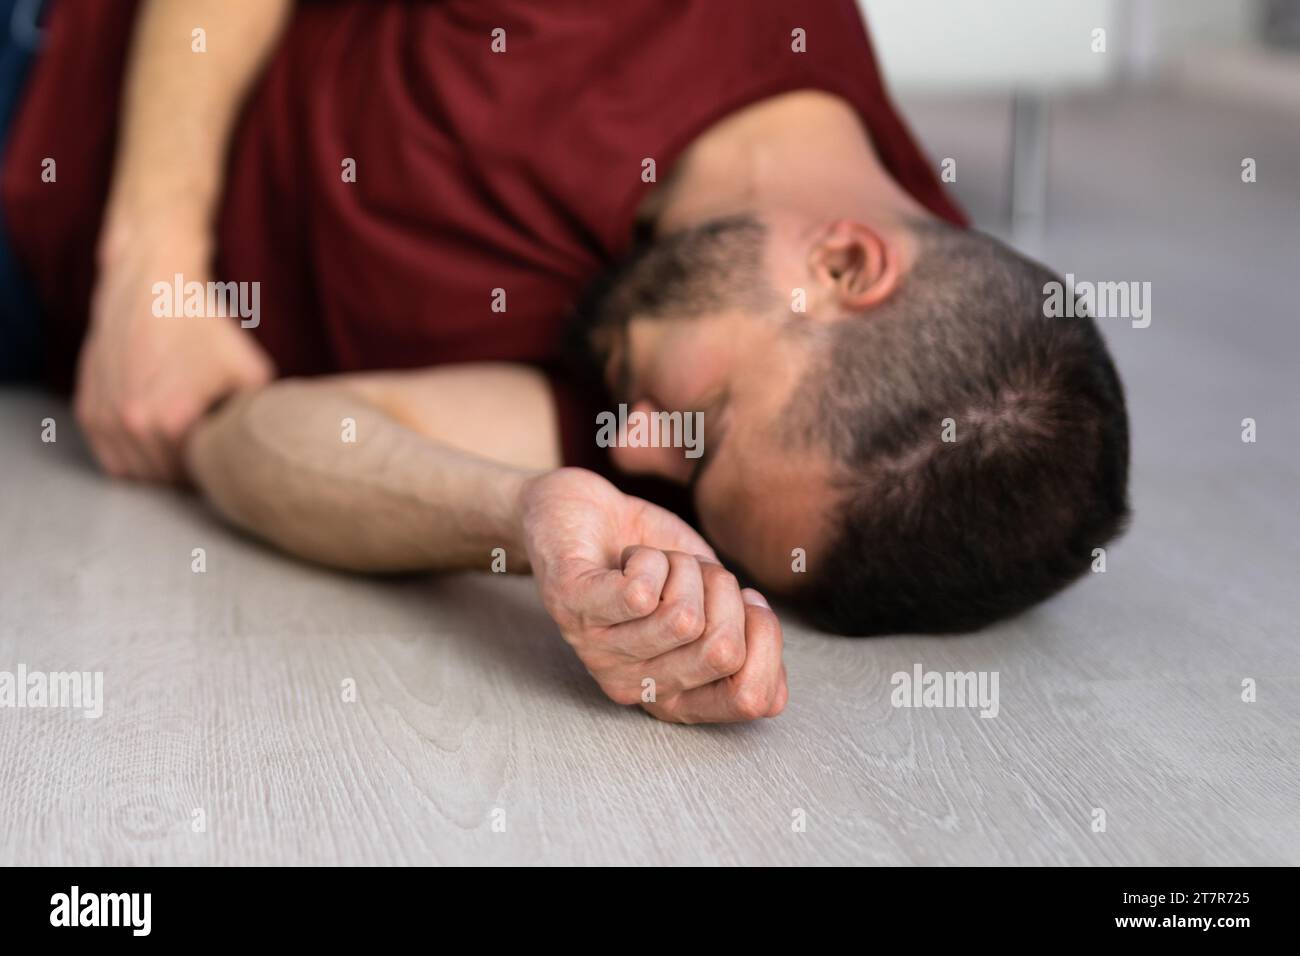 Homme inconscient allongé sur le sol dans un accident d'épilepsie dans une chambre Banque D'Images